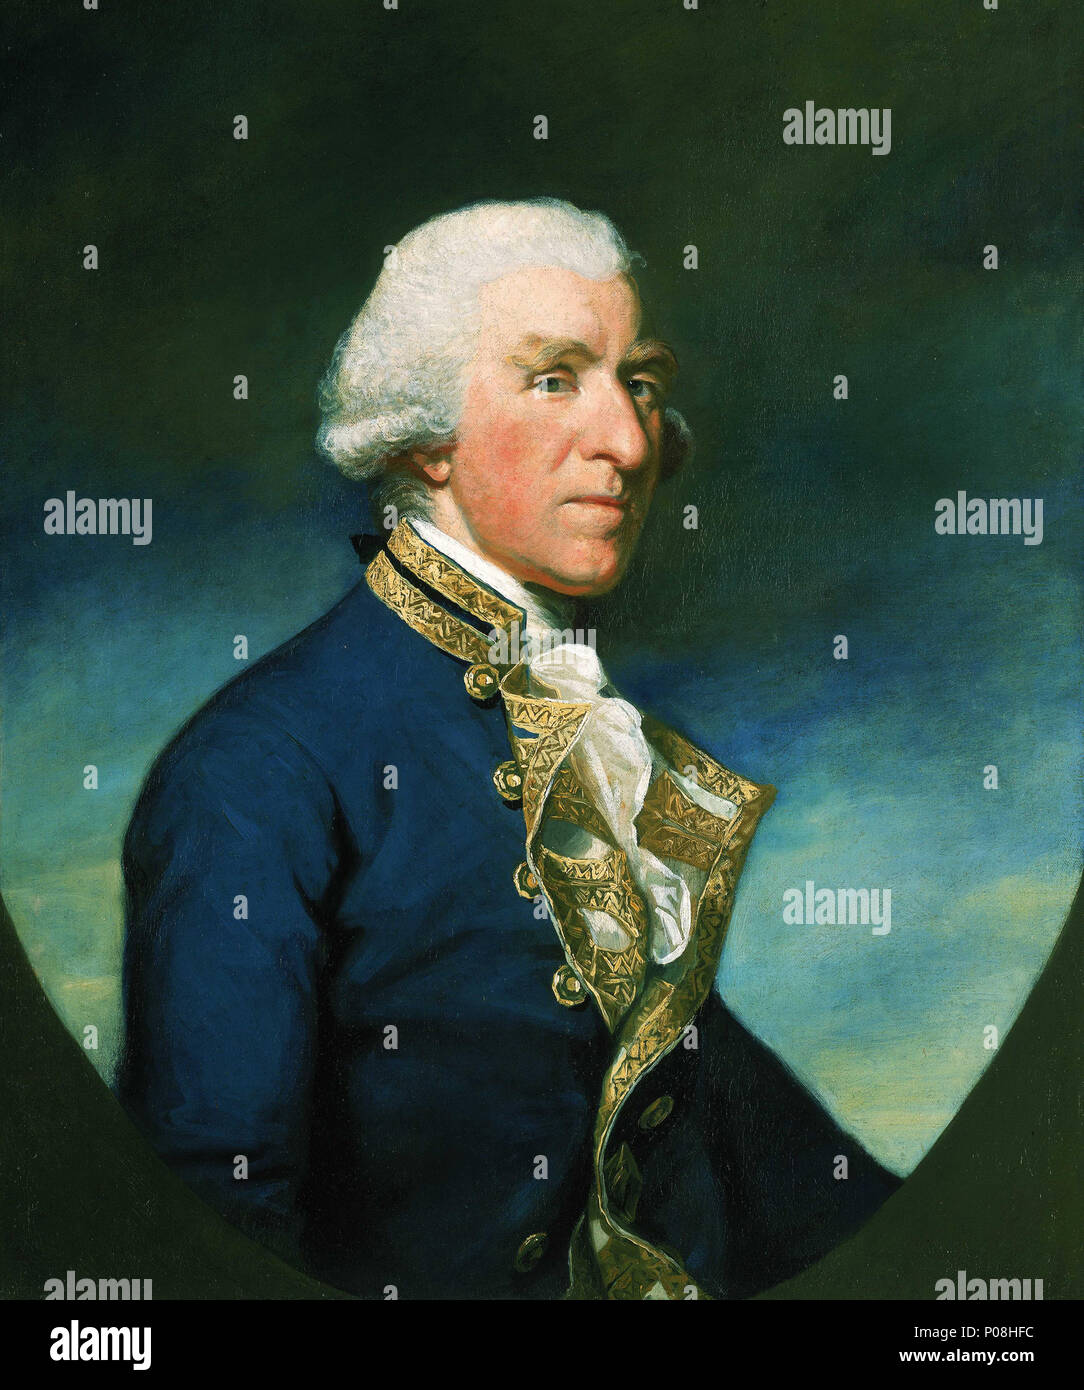 . Englisch: Admiral Samuel Hood, 1724-1816, 1. Viscount Haube ein Brustbild nach rechts, das Tragen der Fahne Officer in voller Uniform, 1767-83, und weiße Perücke. Der Hintergrund besteht aus blauen Himmel und die untere Hälfte bildet eine bemalte Oval. Haube diente unter Sir George Rodney in Westindien und als Kommandeur des Geschwaders in der Schlacht der Heiligen, 1782 erhielt er die Kapitulation der De Grasse, dem französischen Admiral. 1793, als Commander-in-chief im Mittelmeer, beschäftigte er Toulon. Dies war seine letzte aktive Service, bevor er Gouverneur wurde von Greenwich Hospital bis zu seinem Tod. Stockfoto